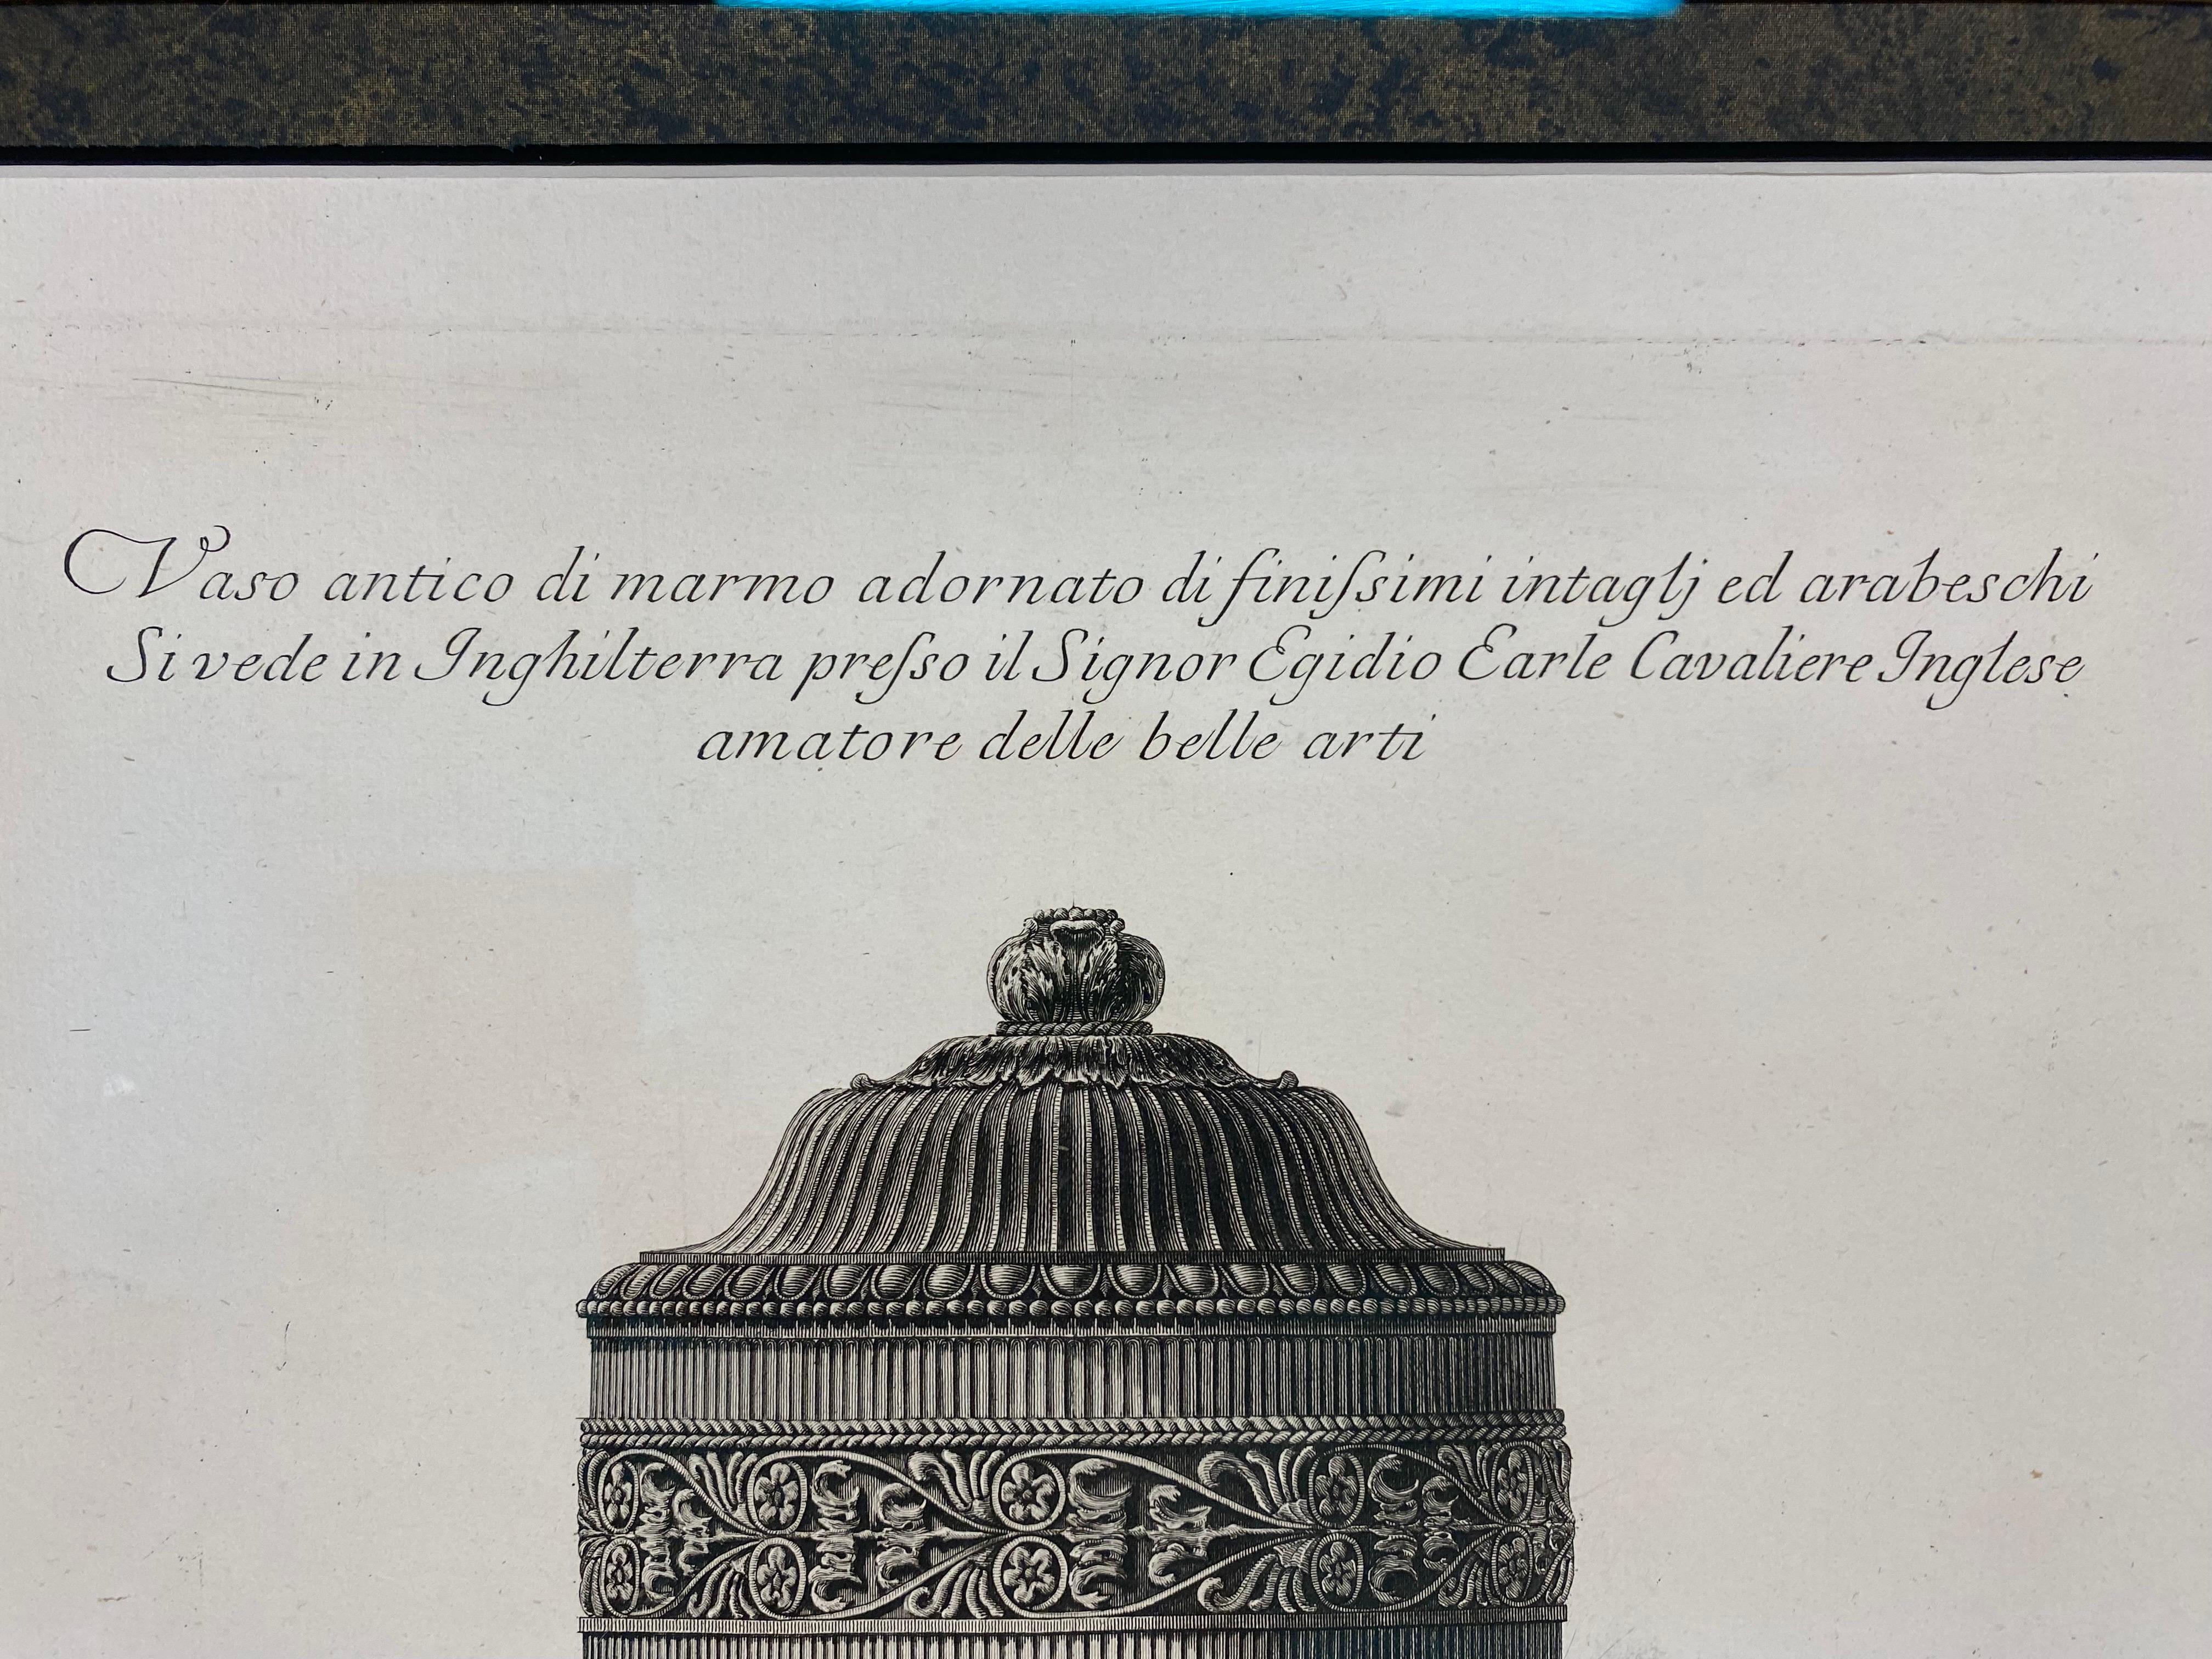 Es handelt sich um eine Kupferradierung von Giovanni Battista Piranesi. Giovanni fertigte diese Kupferplatten in den 1770er Jahren an, und diese Drucke sind ein Nachdruck aus Rom unter Verwendung dieser Kupferplatten. Diese Radierung einer